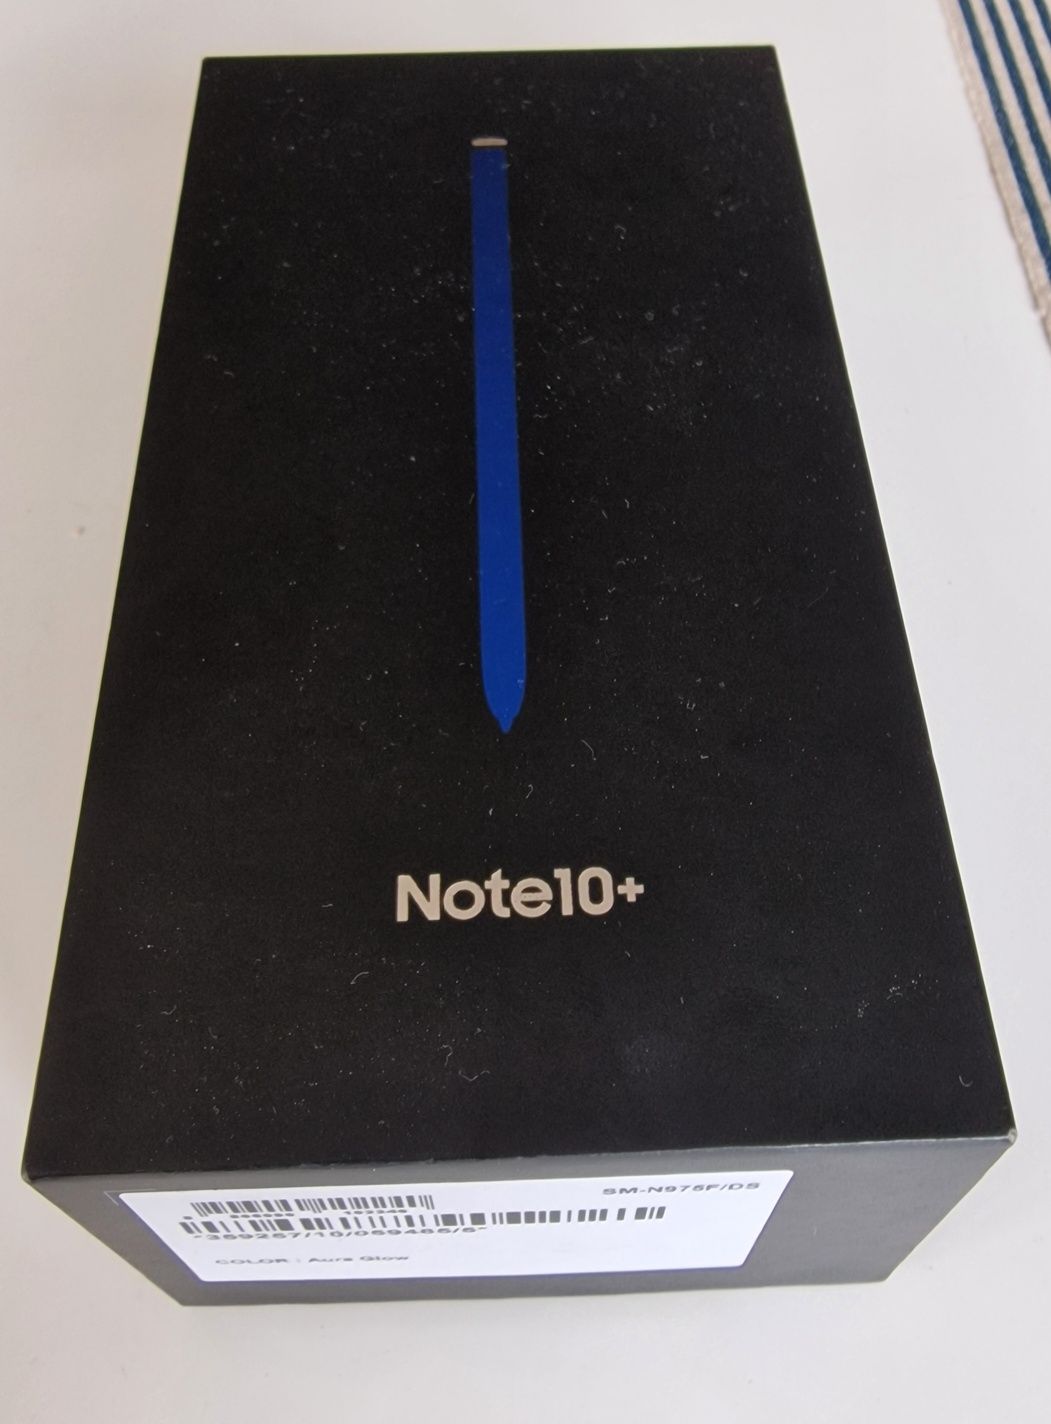 Samsung galaxy note 10+ (plus) - 512Gb (SM-N975F/DS)